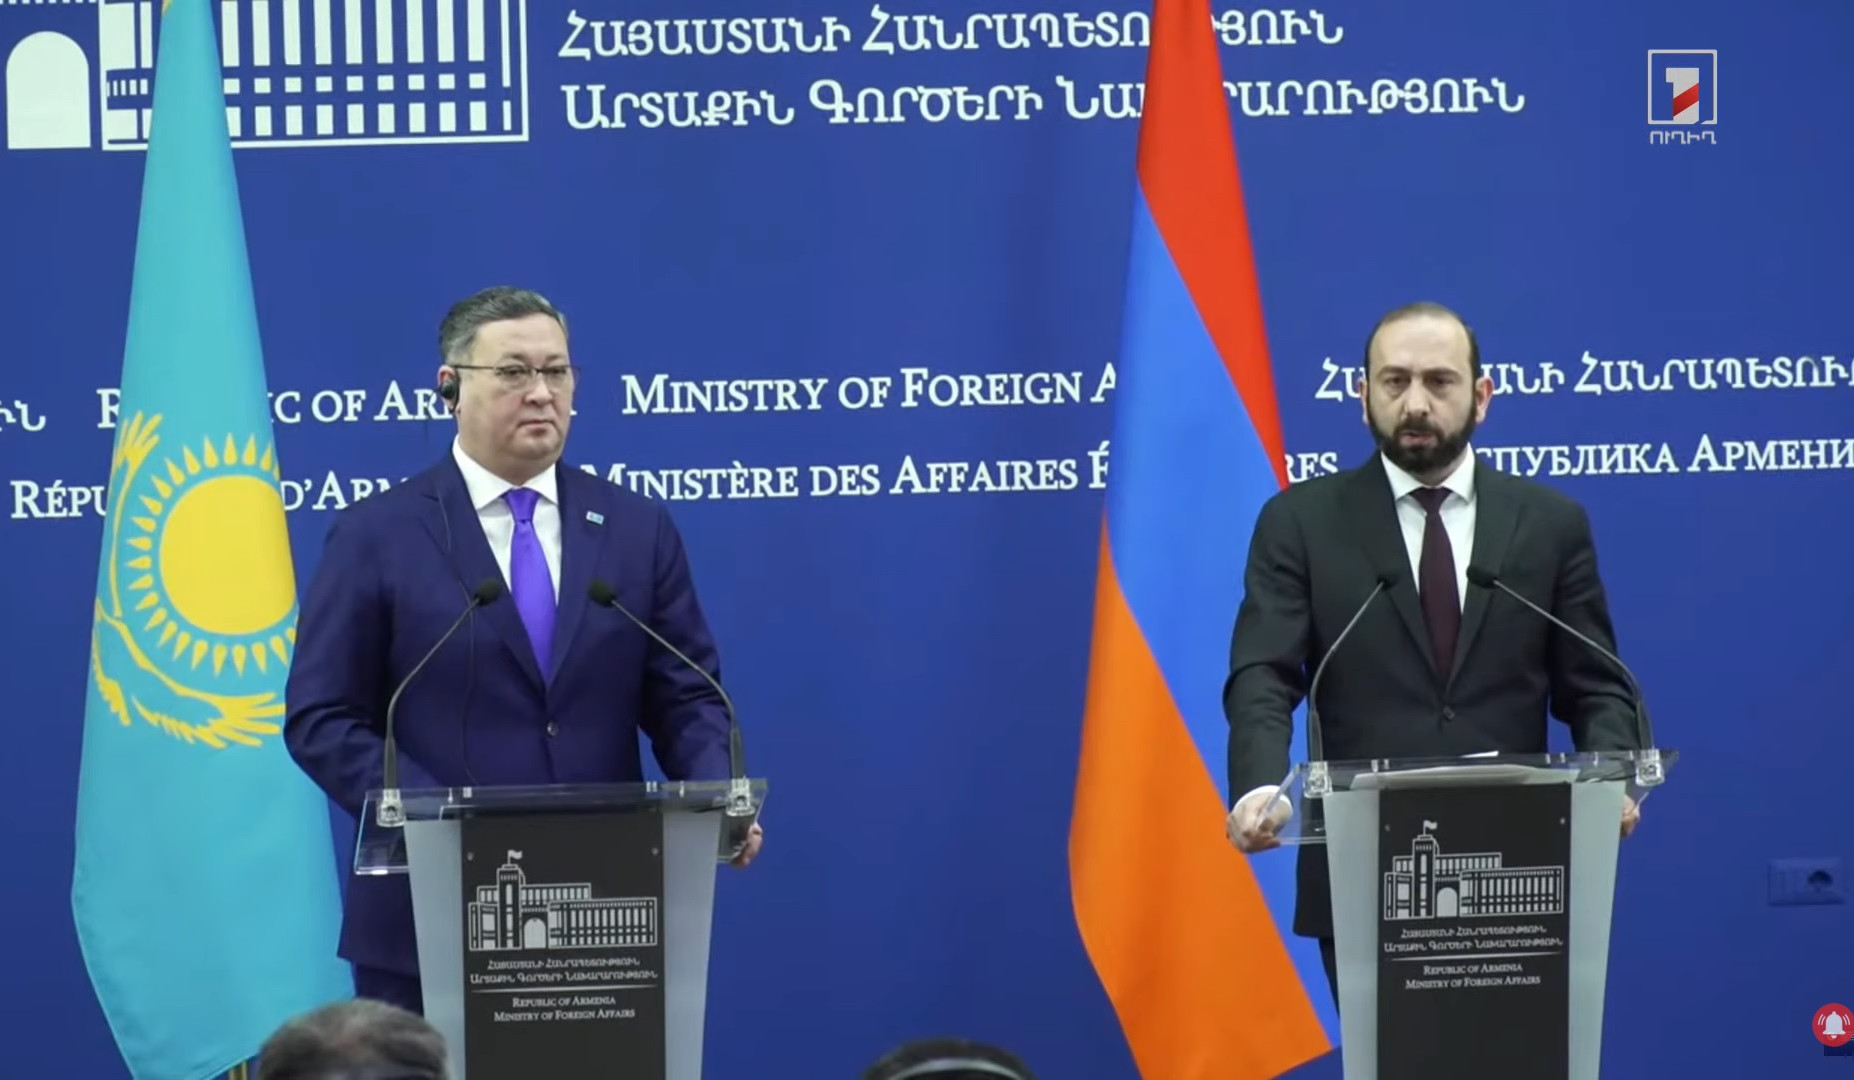 ՀՀ-ի և Ղազախստանի համար նոր հնարավորությունների բացահայտումն առանցքային է և կարևոր. Միրզոյան